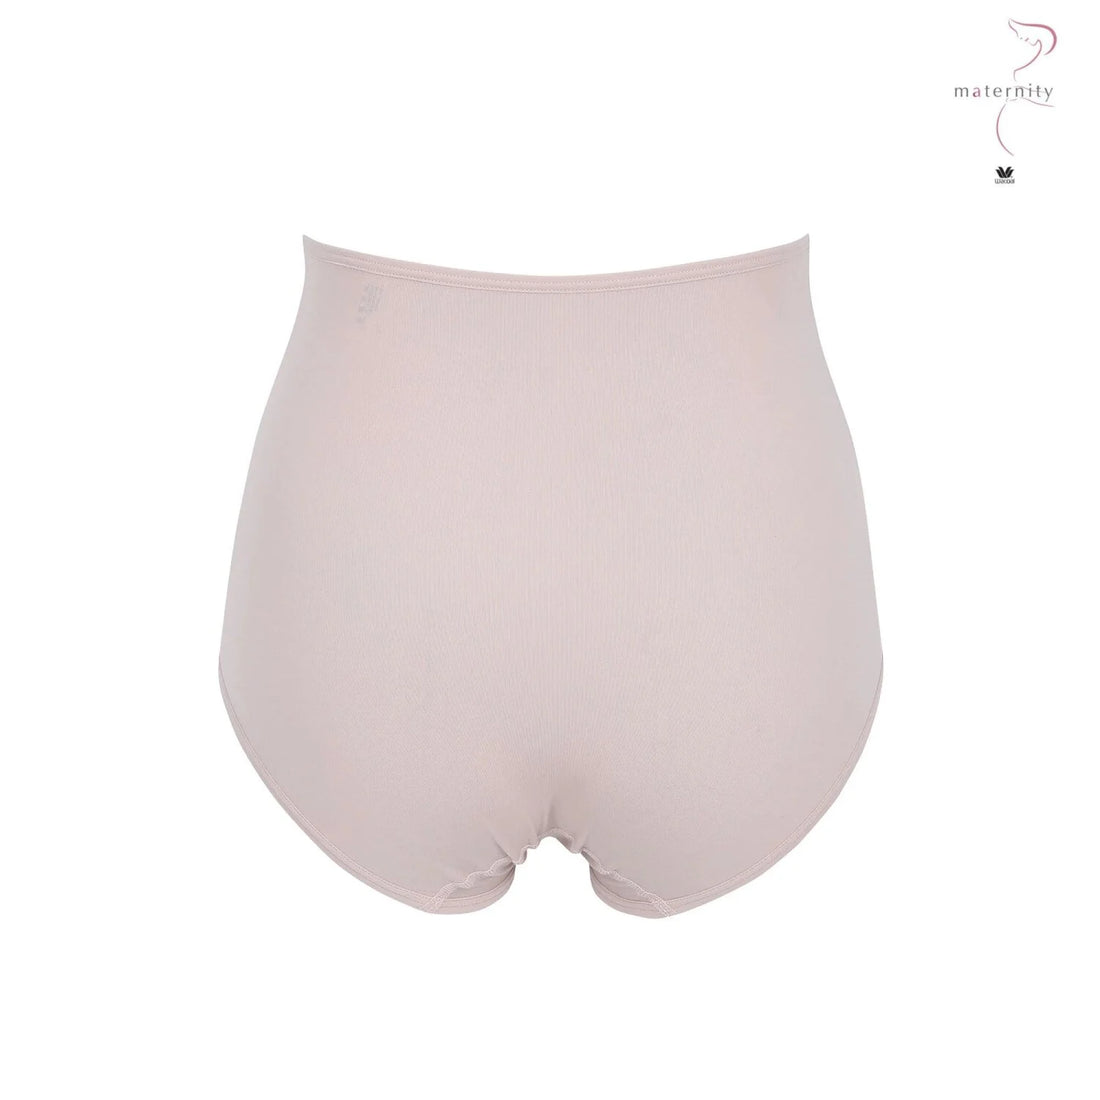 Wacoal Maternity Panty กางเกงในรูปแบบเต็มตัว รุ่น WM6179 สีเบจ(BE)